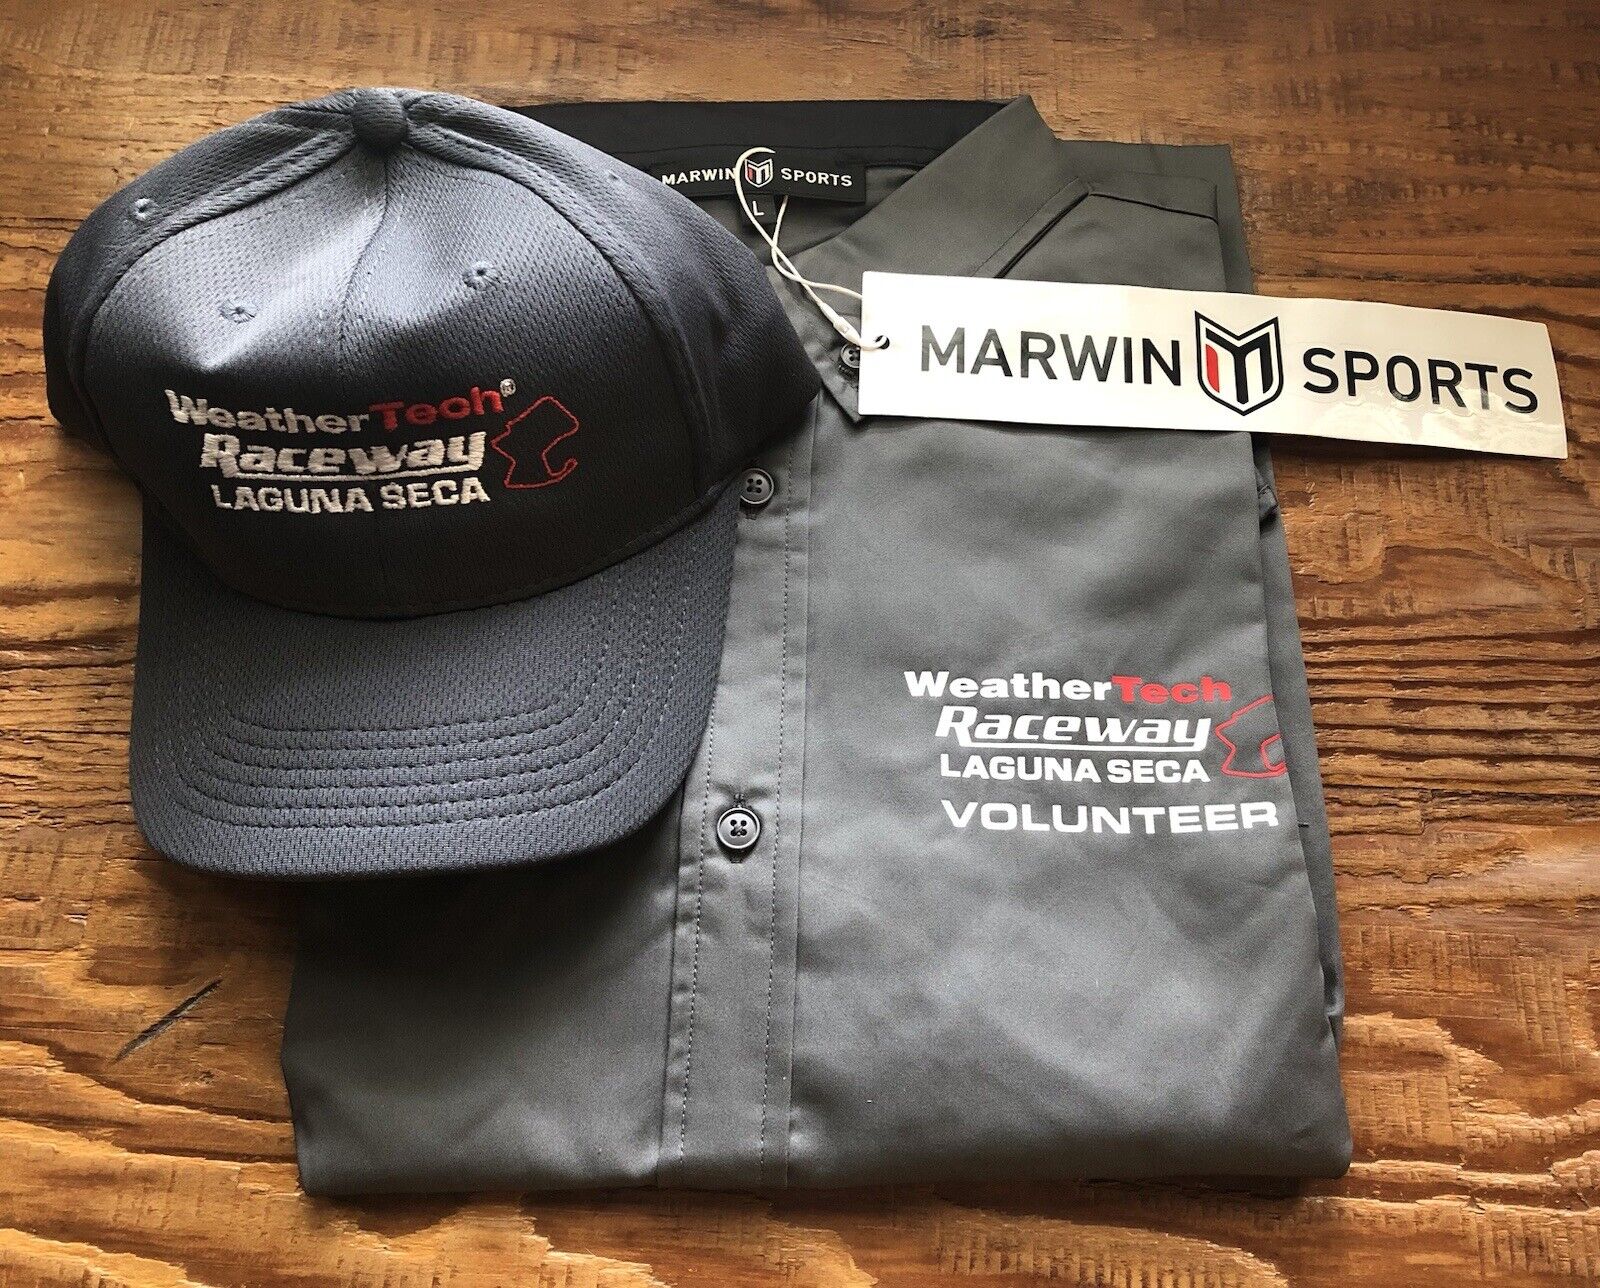 Laguna Seca Volunteer’s Shirt And Hat